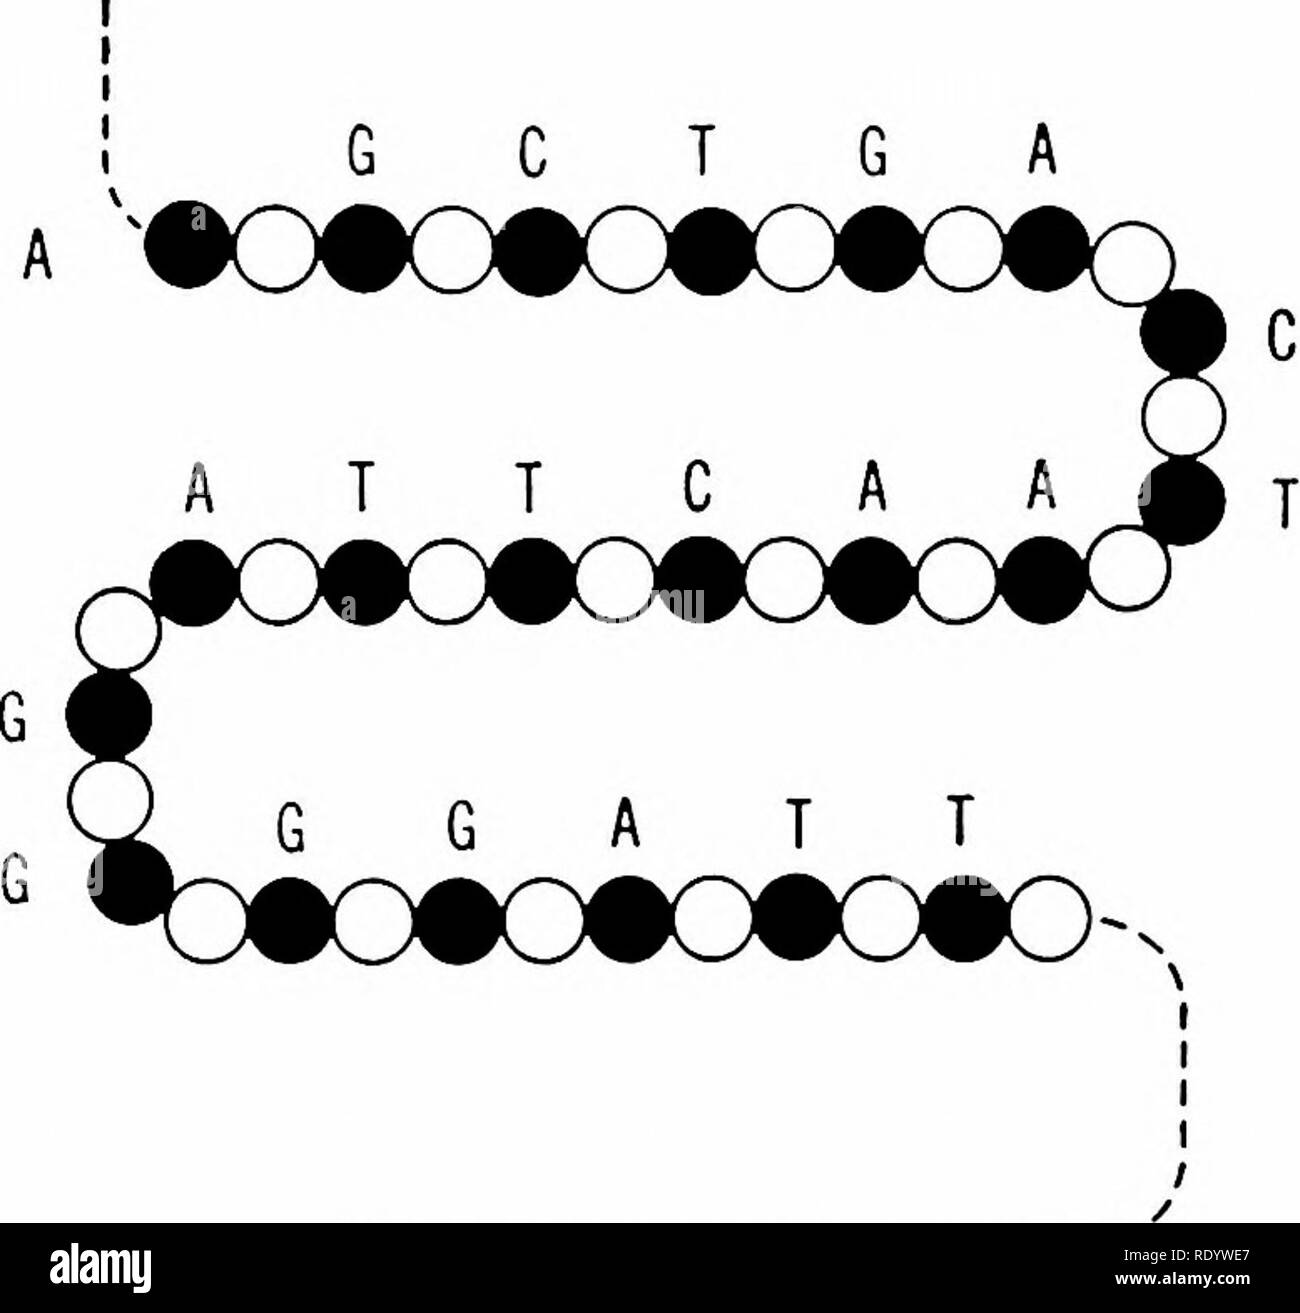 . Principes de la biologie moderne. La biologie. 90 - La cellule G C T G A. Fig. 4-20. La structure moléculaire d'un seul brin d'acide nucléique (ADN). Cercles noirs  = sucre (deoxyri- bose) ; Cercles blancs  = ; un phosphate, l'adénine ; C, cyto- sine ; G, la guanine, la thymine, et T (Fig. 4-19). La chaîne, lorsque rompu, soit les rendements des nucléotides (sucre-phosphate- Unités de base) ou nucléosides (sucre légèrement plus petit- Unités de base, dépourvu de phosphate). Dans la cellule vivante les différents composés peuvent être unis dans de plus grands complexes : pro- sels avec protéines, glucides, lipides et stéroïdes ; avec d'autres glucides lipides ; w Banque D'Images